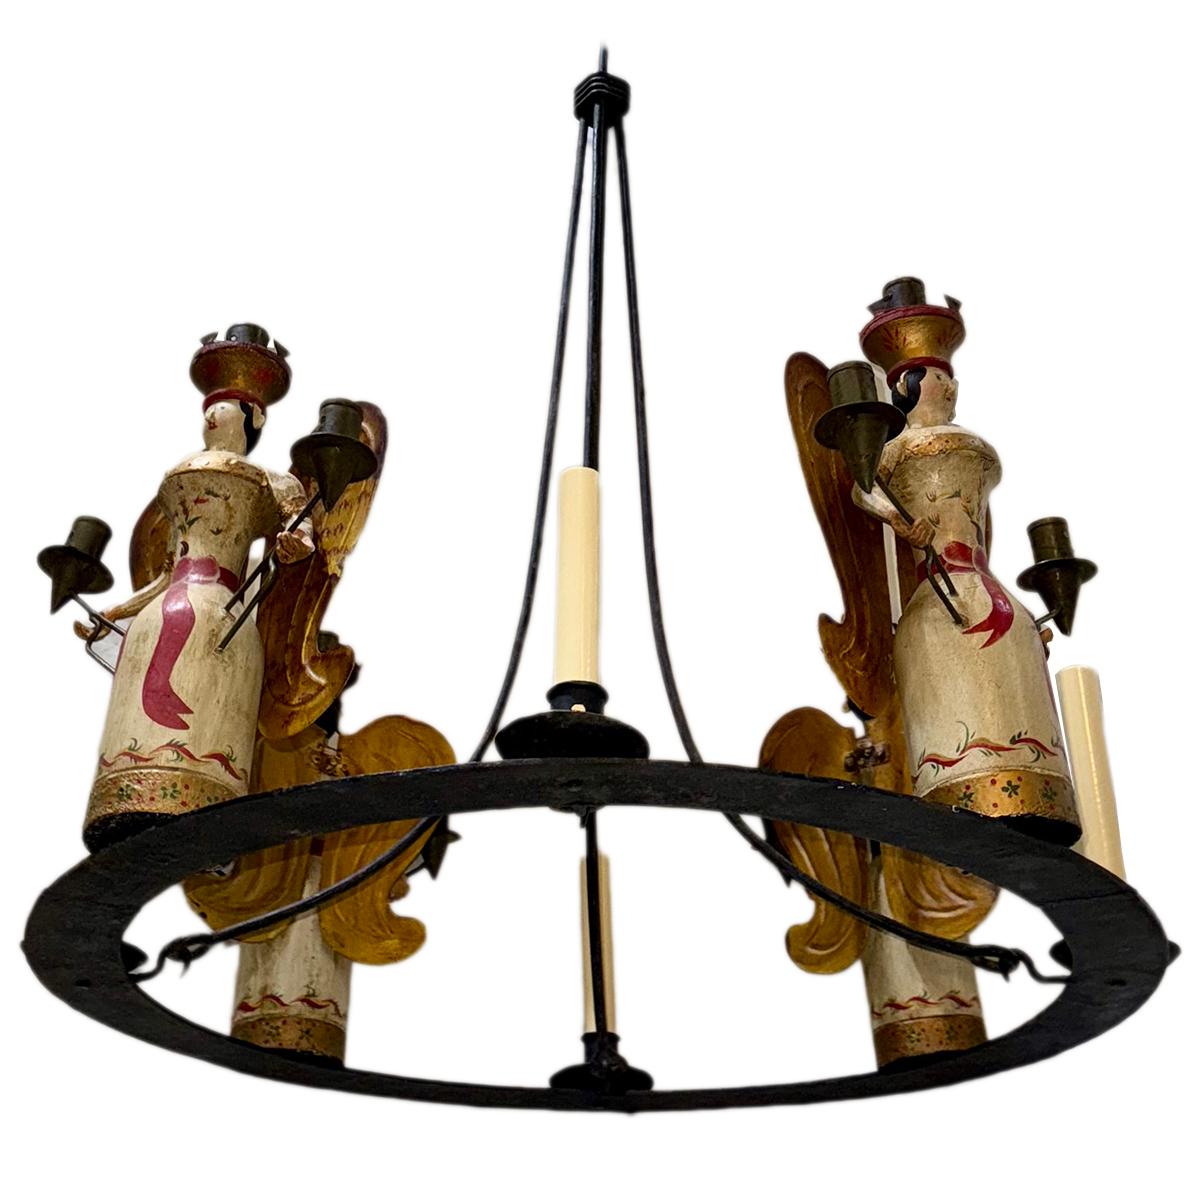 Lustre italien en fer forgé datant des années 1940 avec des chandeliers en bois en forme d'ange.

Mesures :
Diamètre : 28